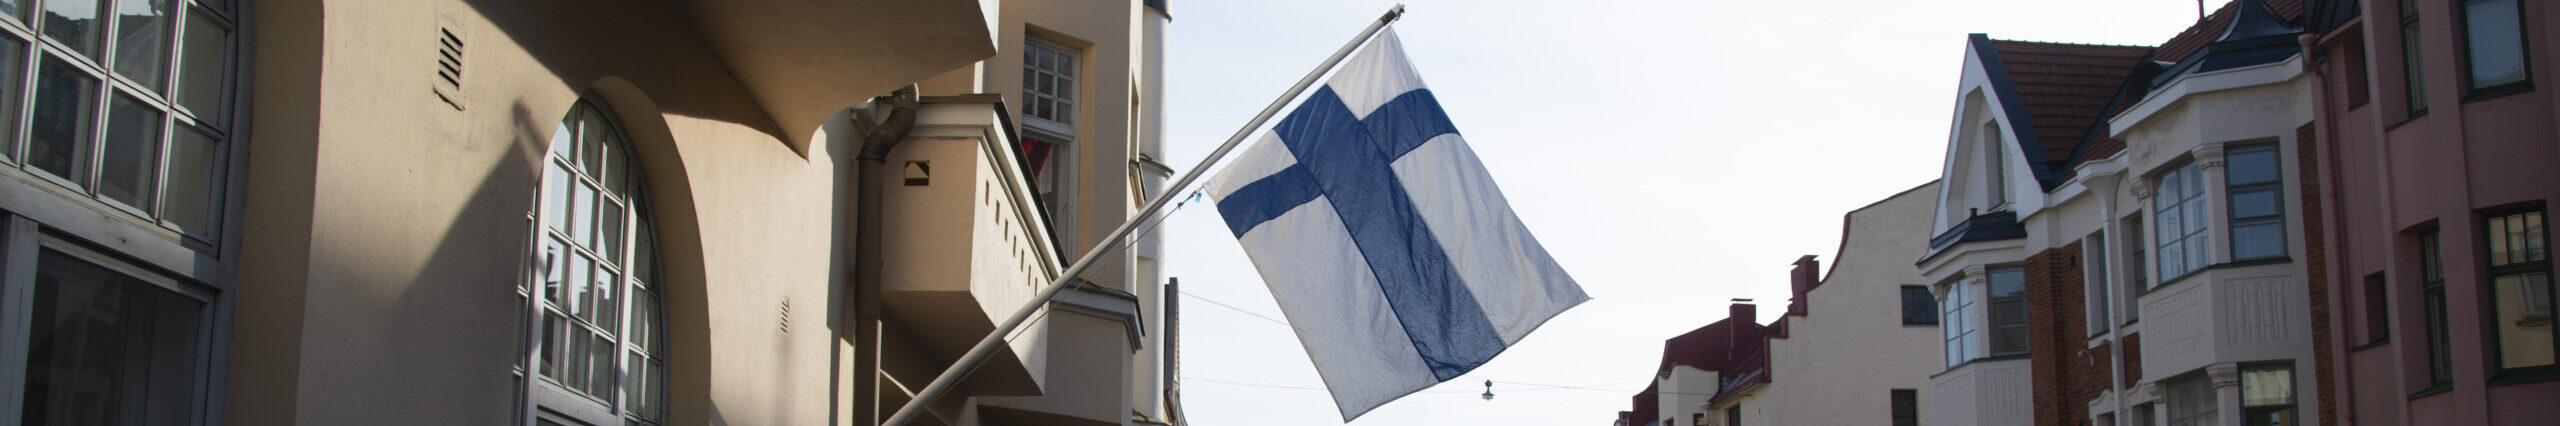 Kuvaaja: Jarno Mela. Suomi-kuvapankki Suomen lippu liehuu kadulla, jossa on vanhoja taloja.